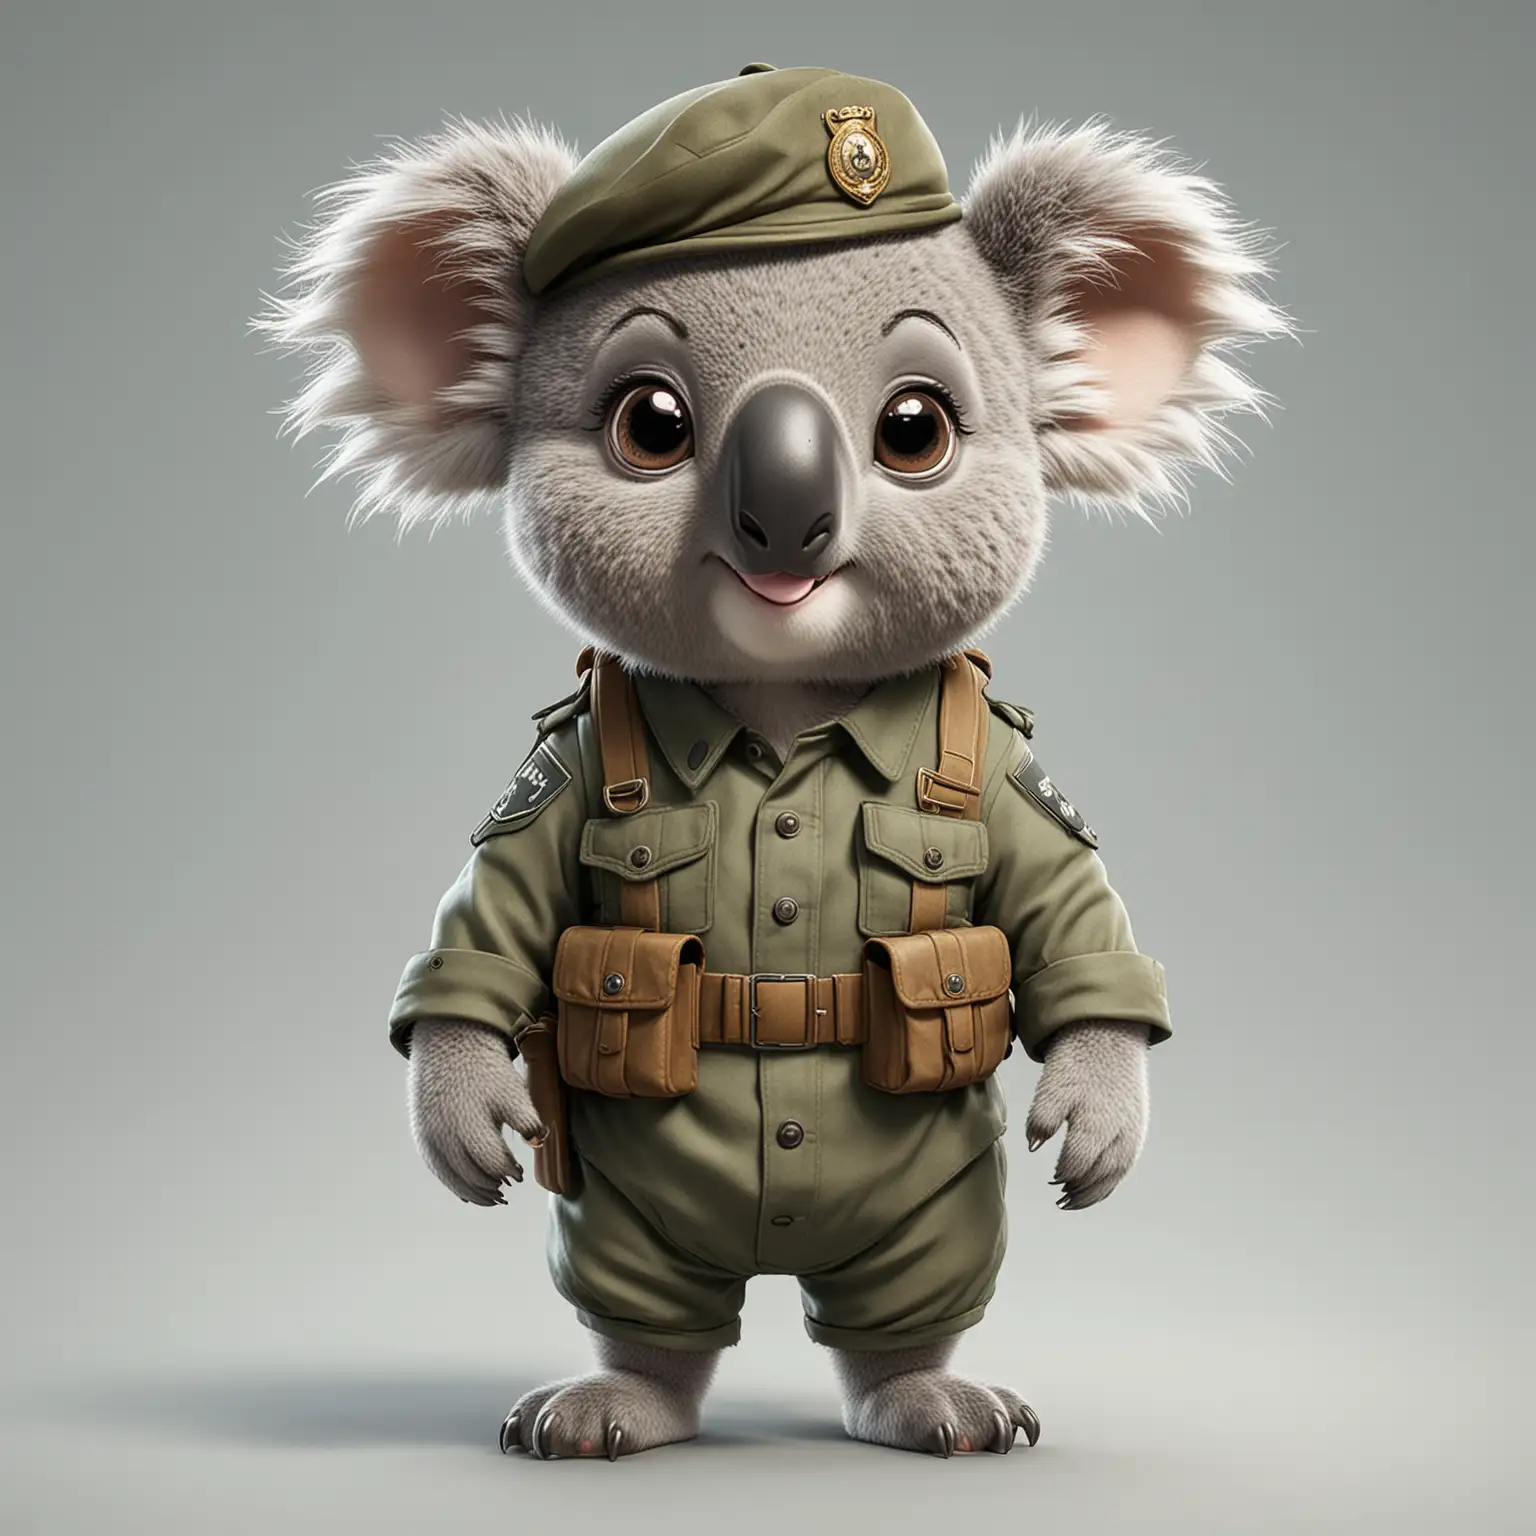 Happy Koala Soldier in Cartoon Style